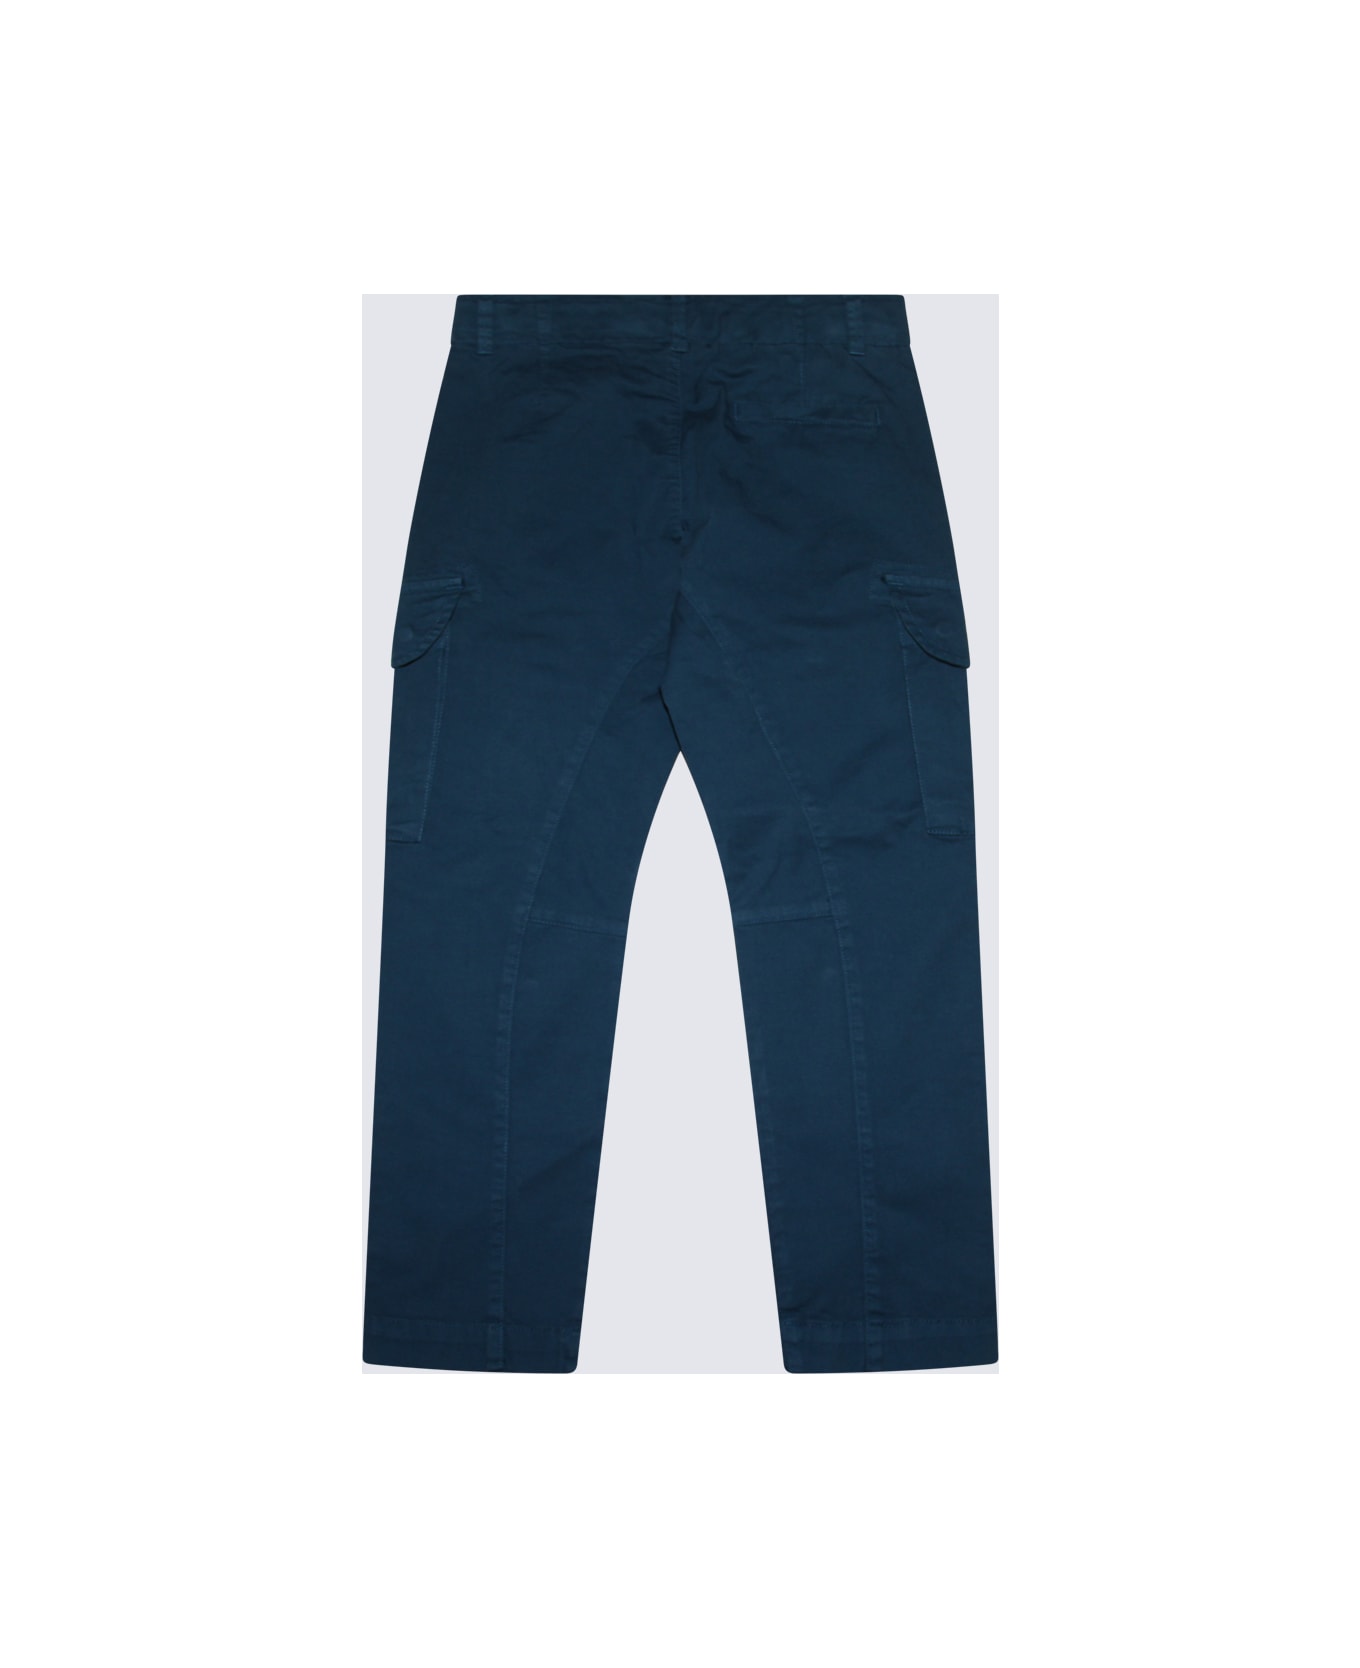 C.P. Company Blue Cotton Pants - INK BLUE